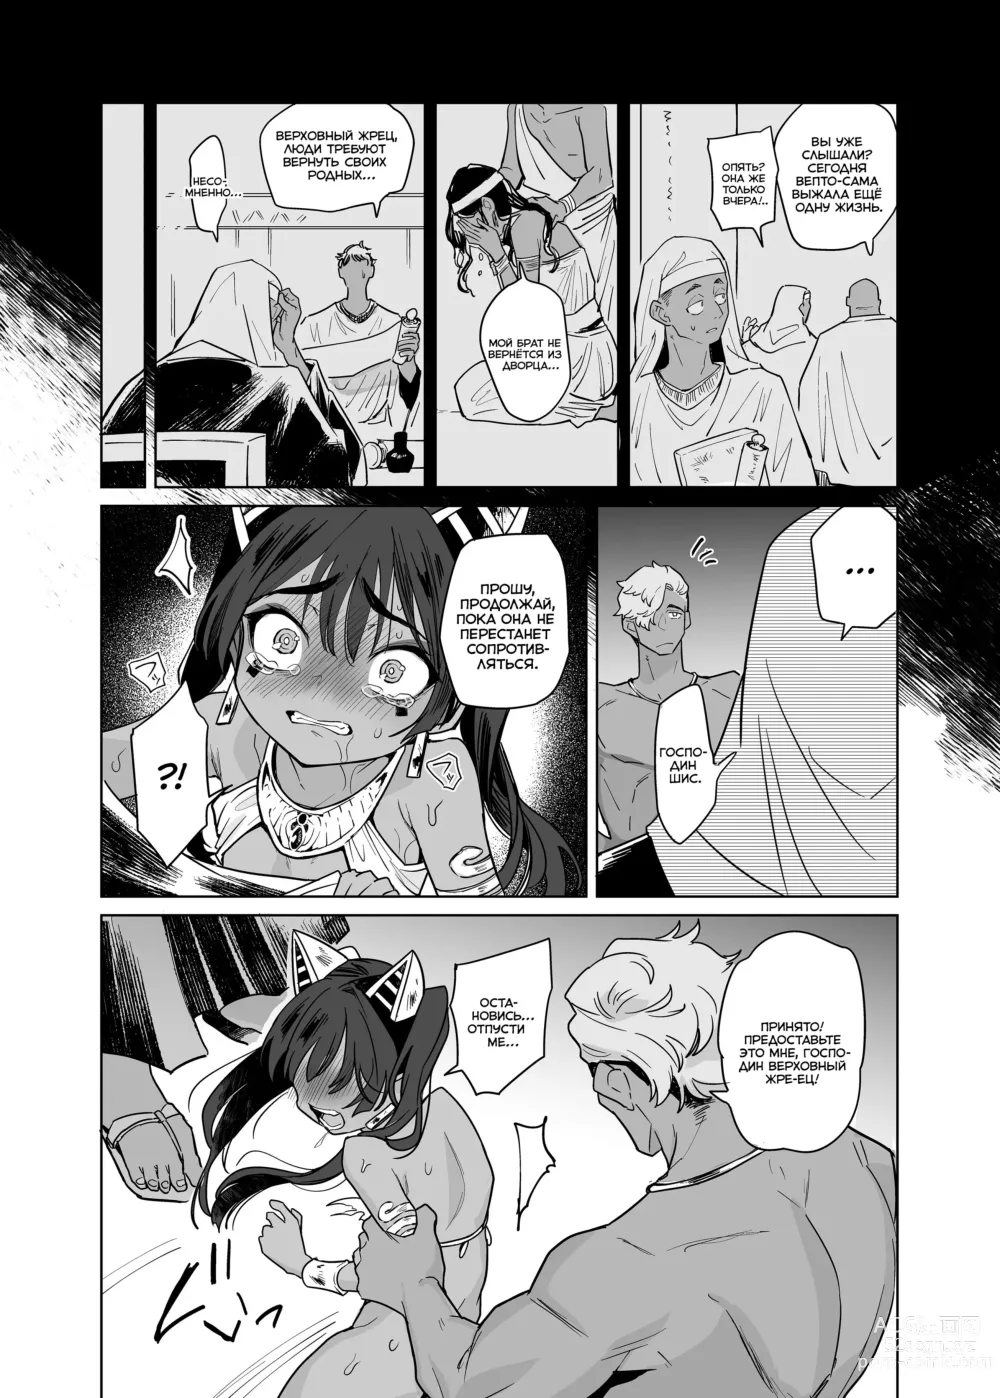 Page 50 of doujinshi Вепто-сама! Не издевайтесь над людьми!